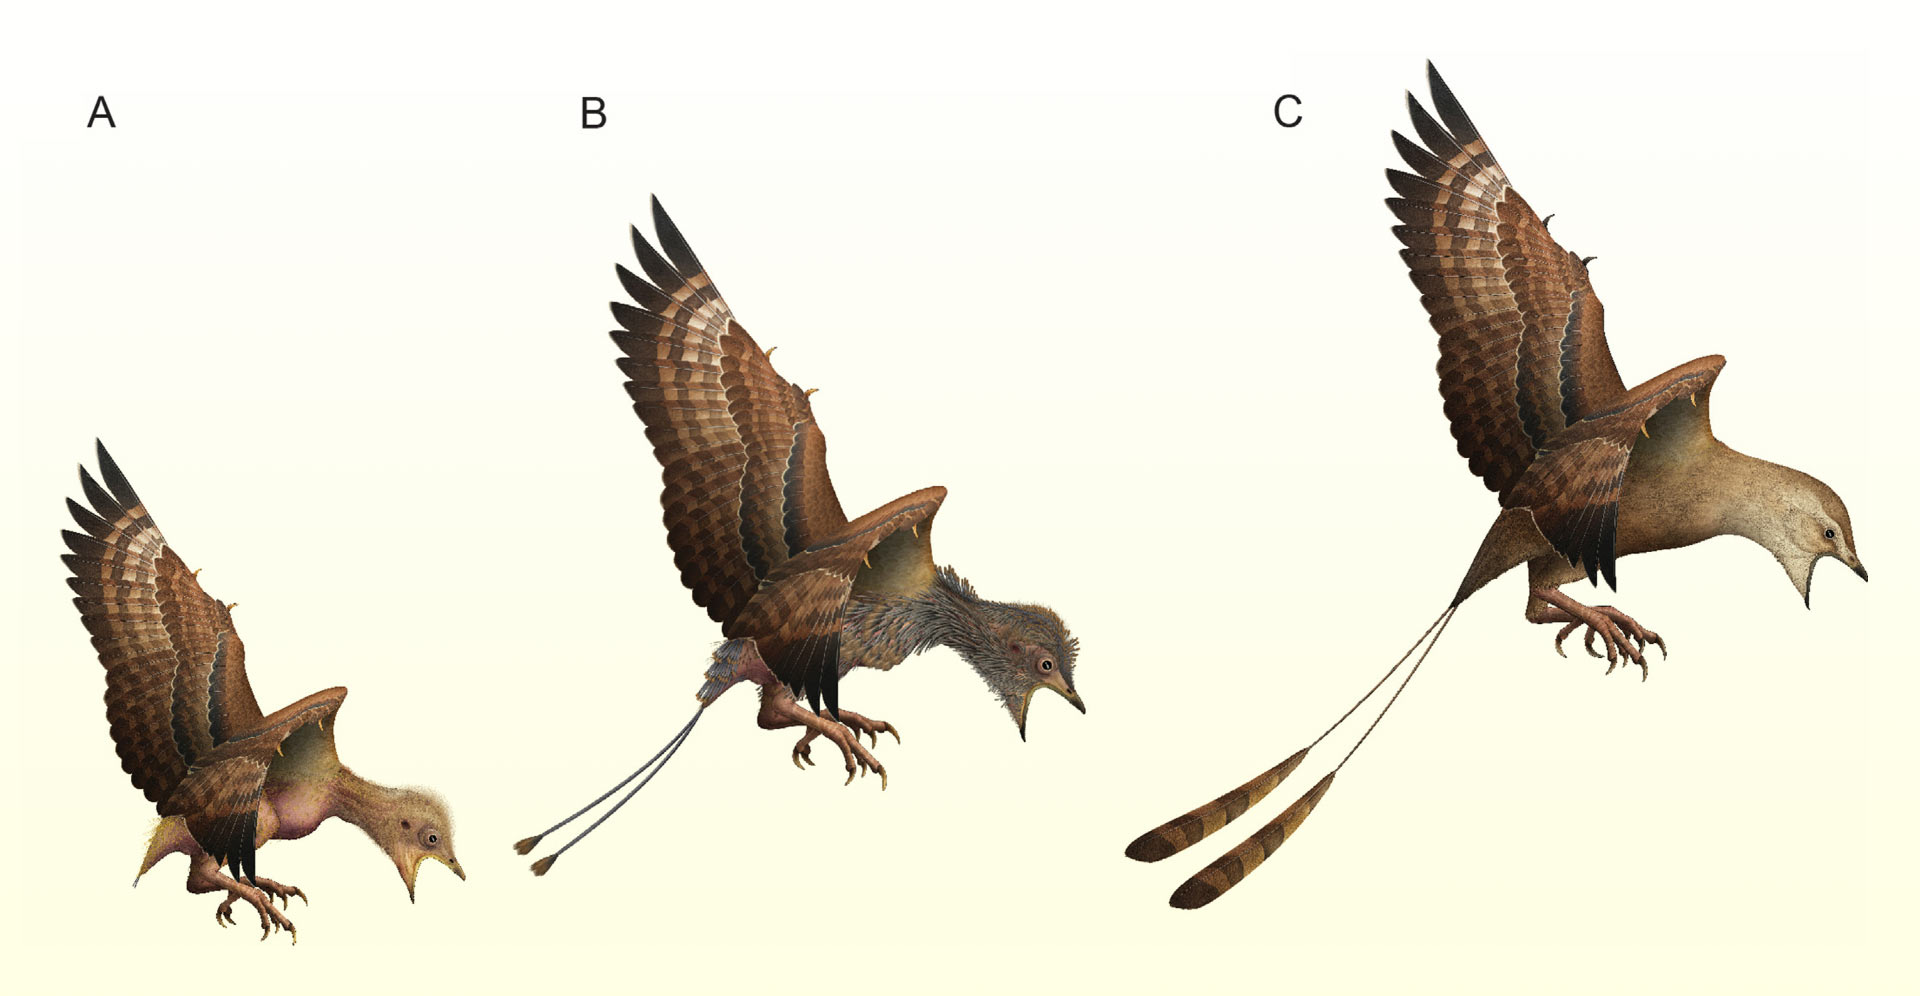 Hypotetisk smeltecyklus hos unge enantiornithine fugle: (A) rugende fugl med sparsom fødselsfjerdragt; (B) hurtig smeltning; (C) unge med ung fjerdragt inklusive fuldt udviklede rachis-dominerede fjer.